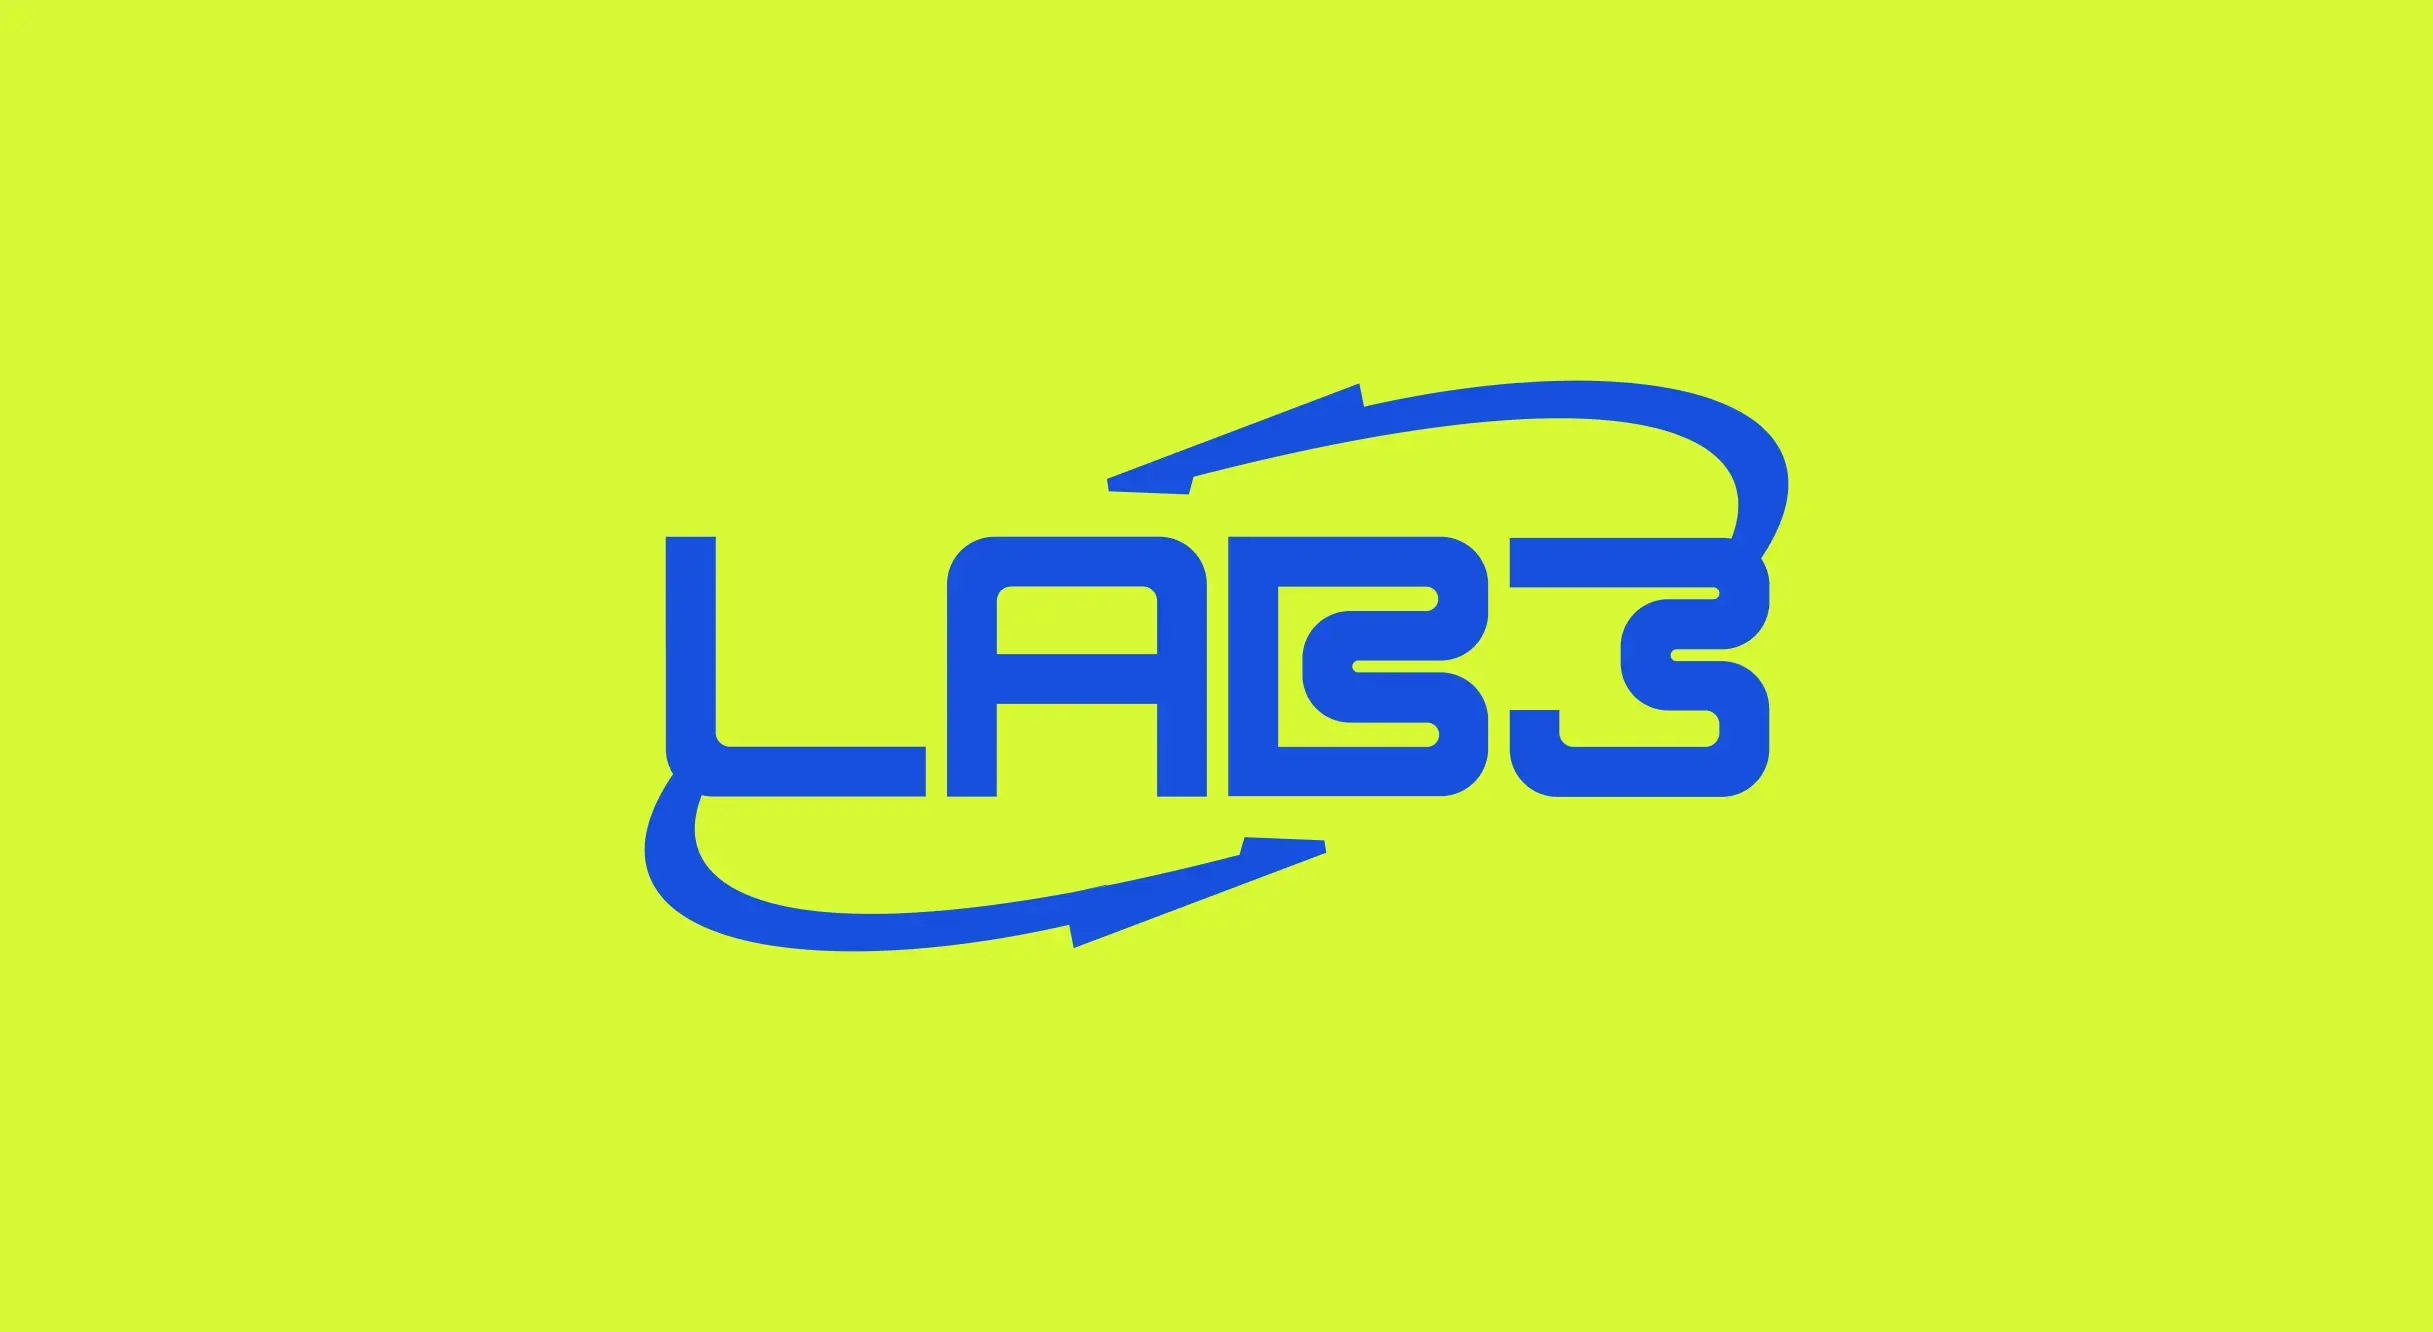 Lab3